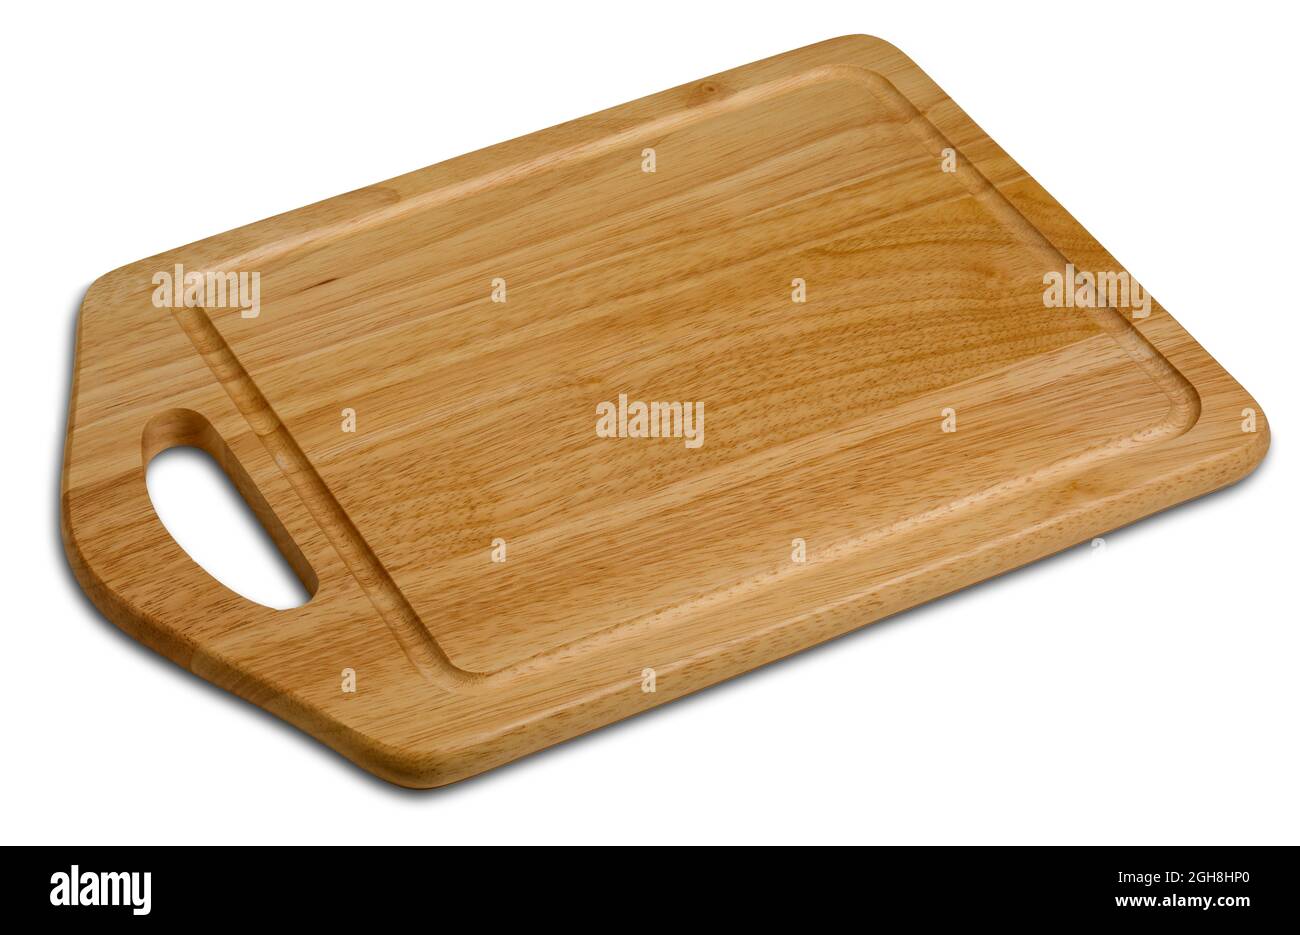 Cutting board. Stock Photo